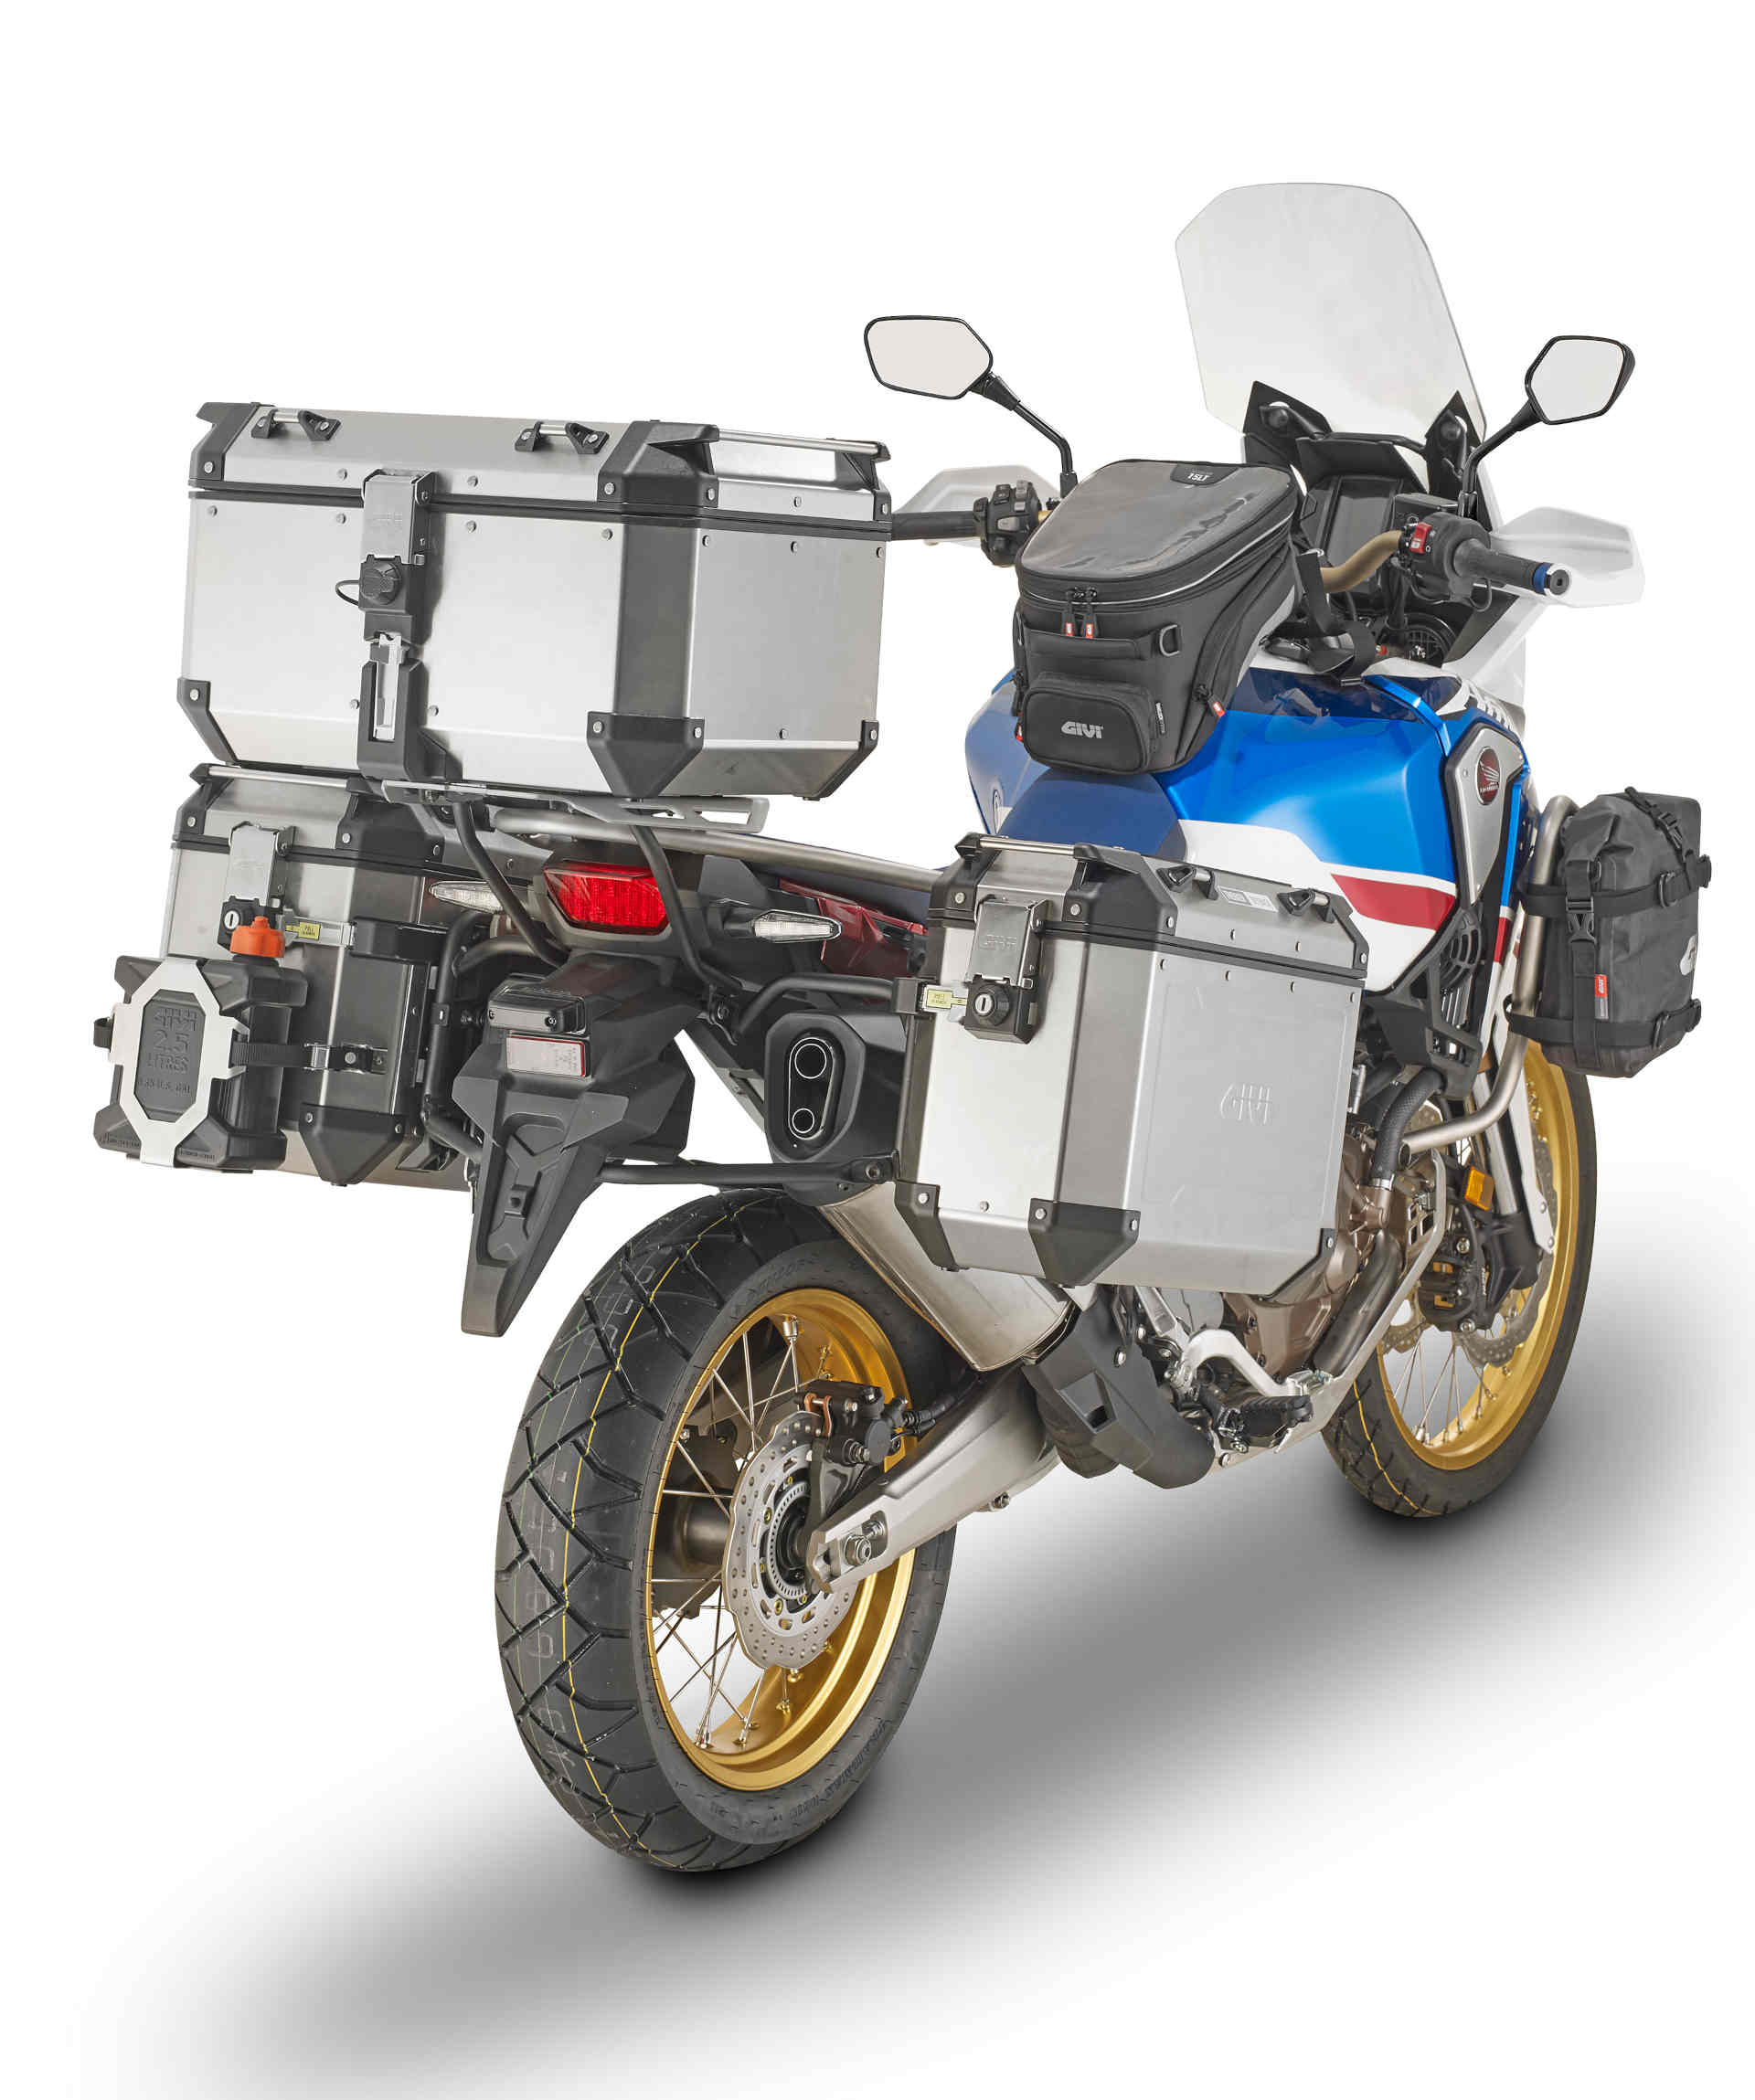 GIVI Stahrohr Side Case Carrier para Trekker Outback Monokey CAM SIDE Case para modelos Honda -